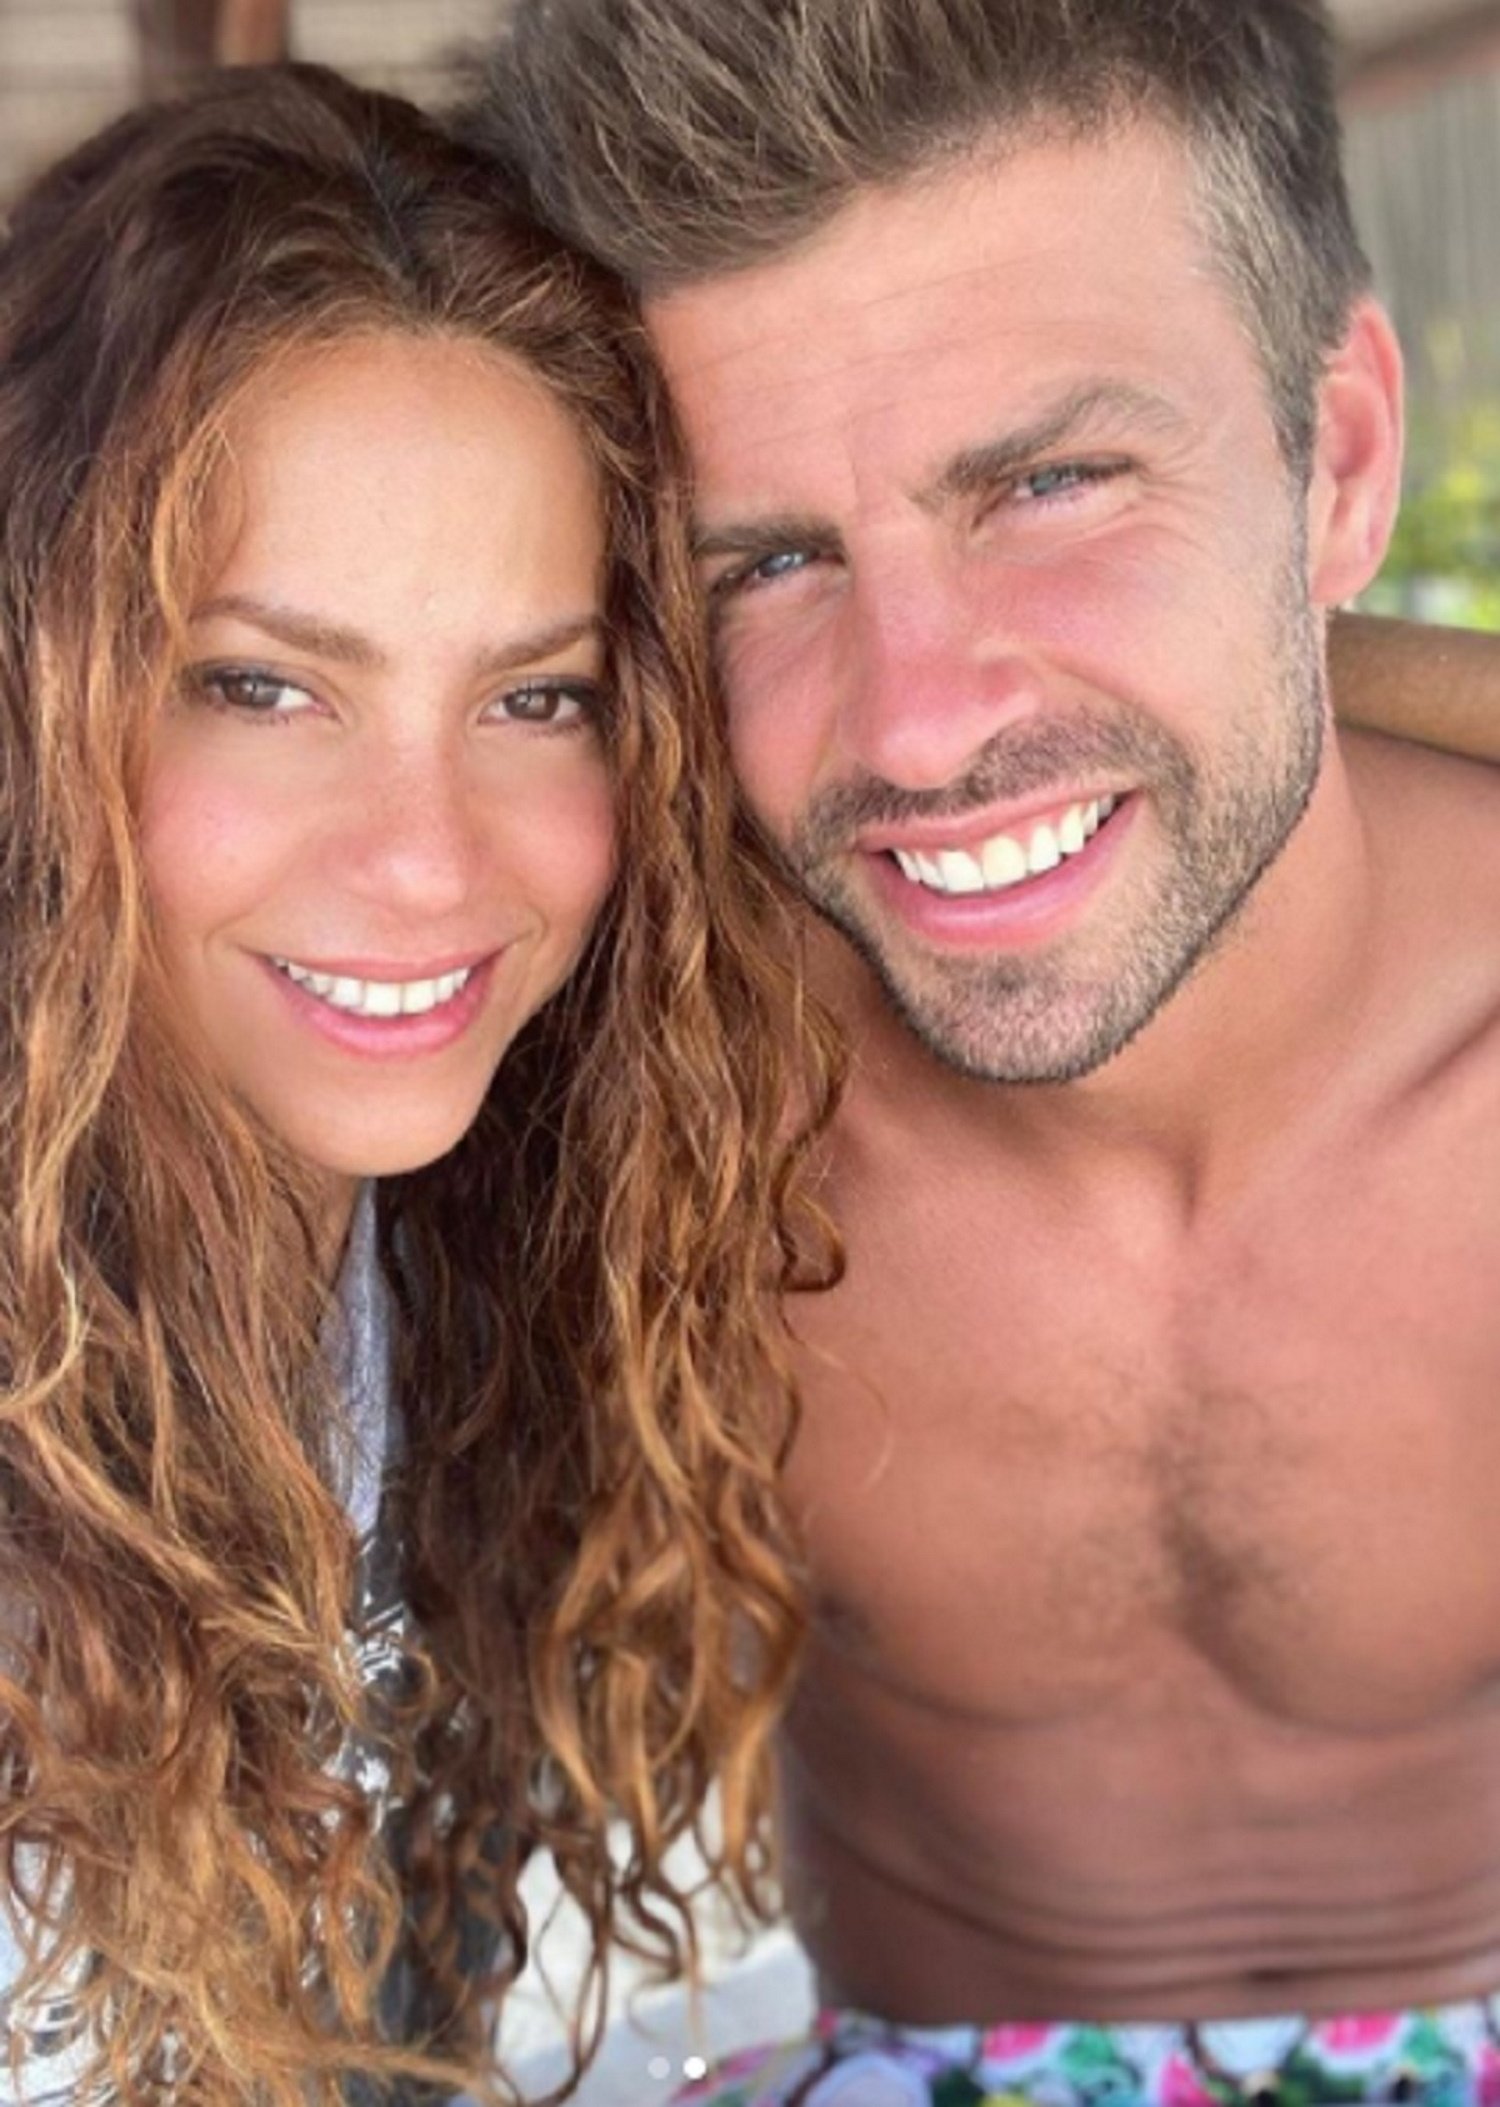 El romántico beso de Piqué a Shakira que deshace a la red: "¡Qué rico todo!"